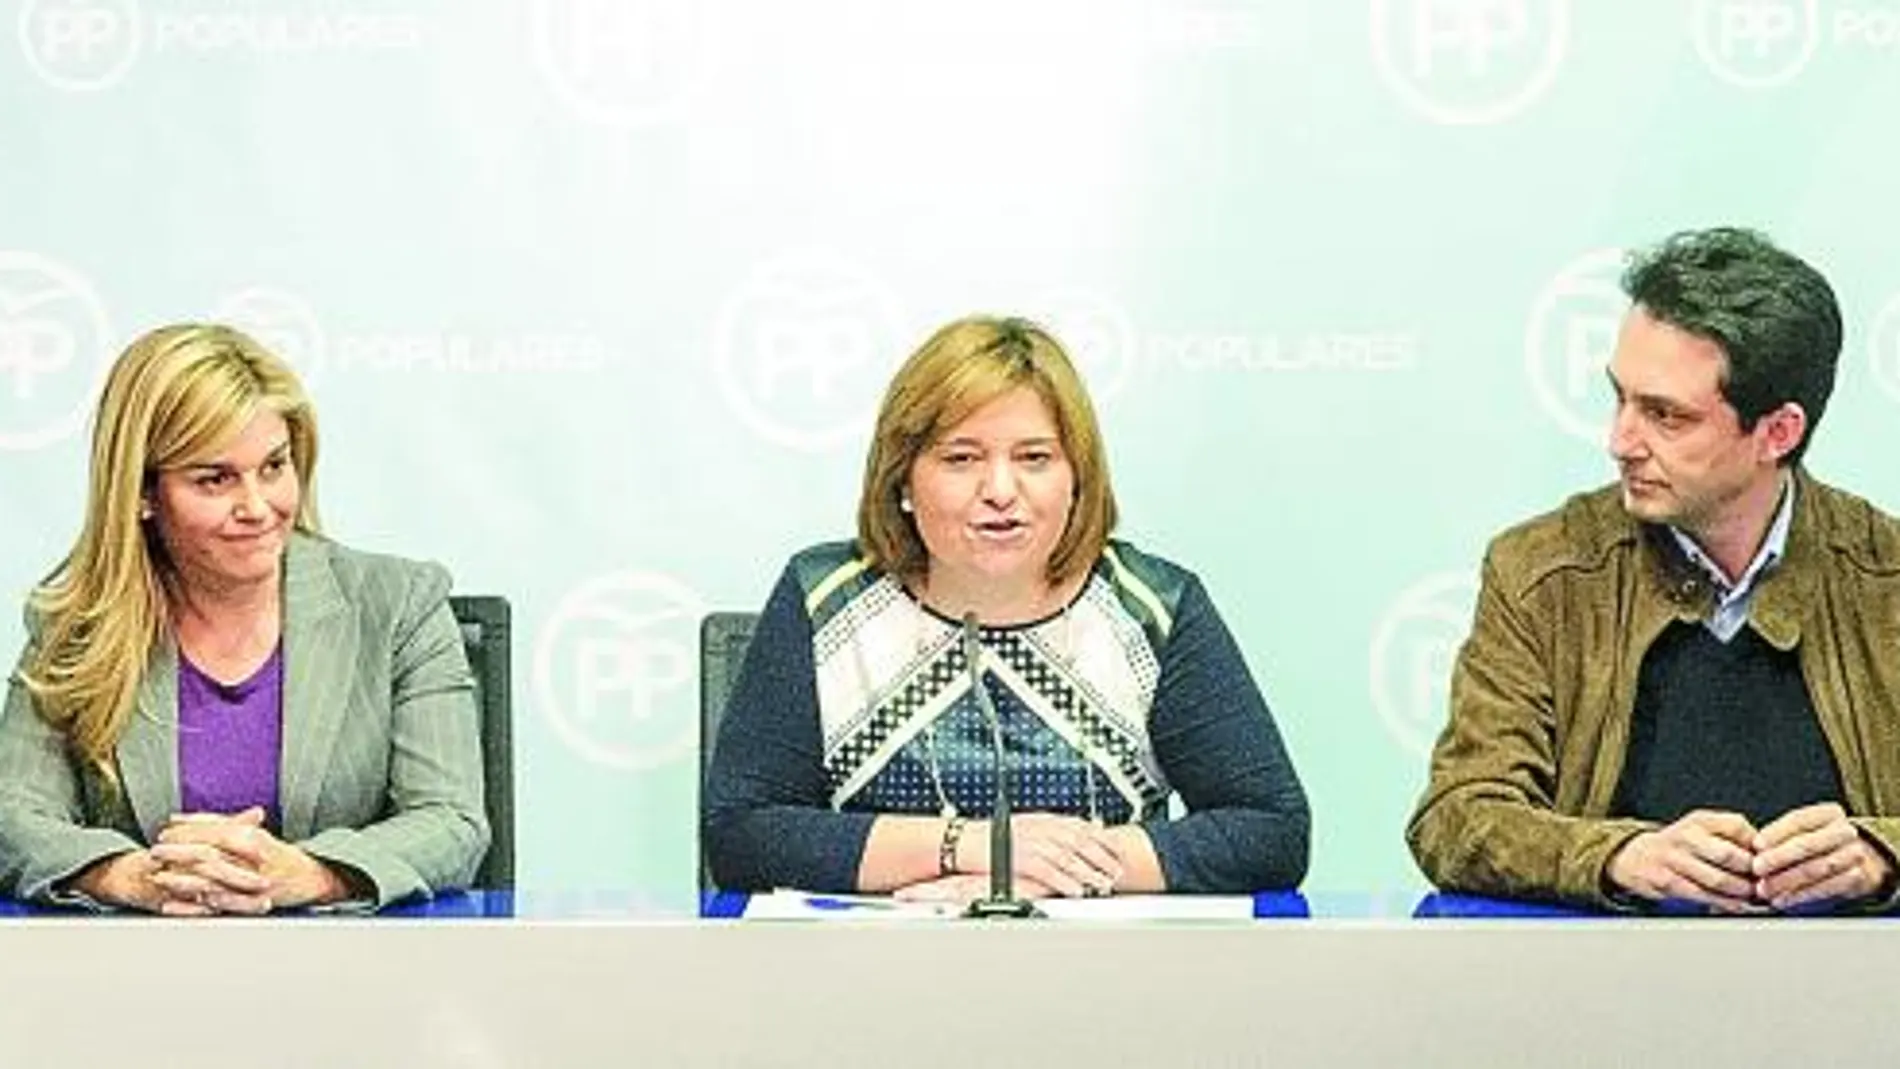 Císcar, presidente de Alicante; Ortiz, secretaria general; Bonig, presidenta del PPCV; Betoret, presidente de Valencia; Moliner, presidente de Castellón